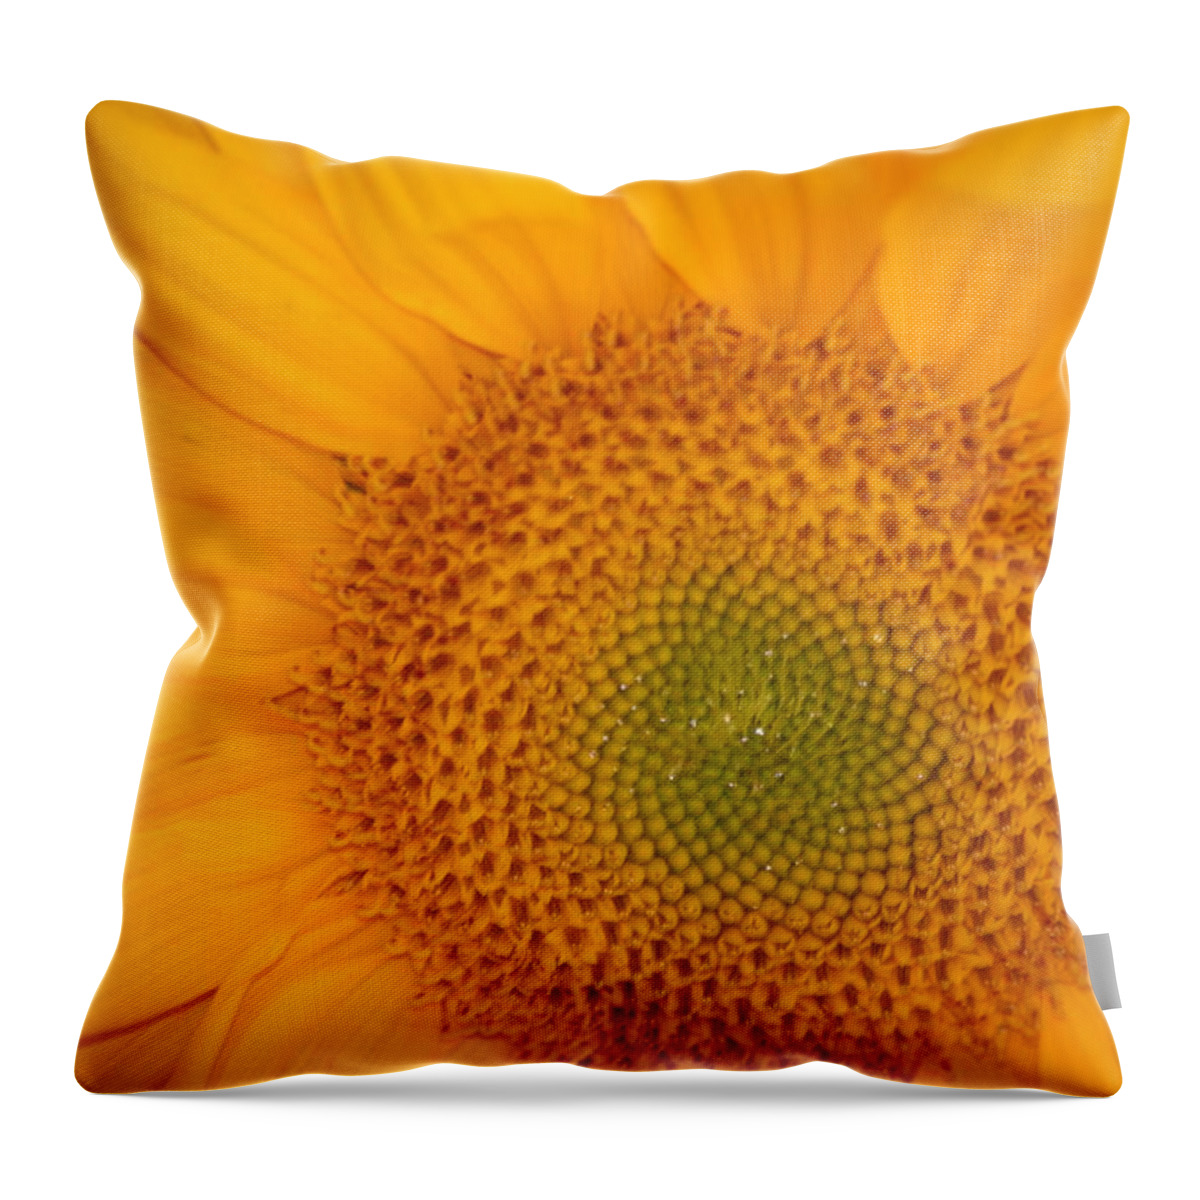 Sunflower Throw Pillow featuring the photograph Golden Sunflower by Liz Vernand